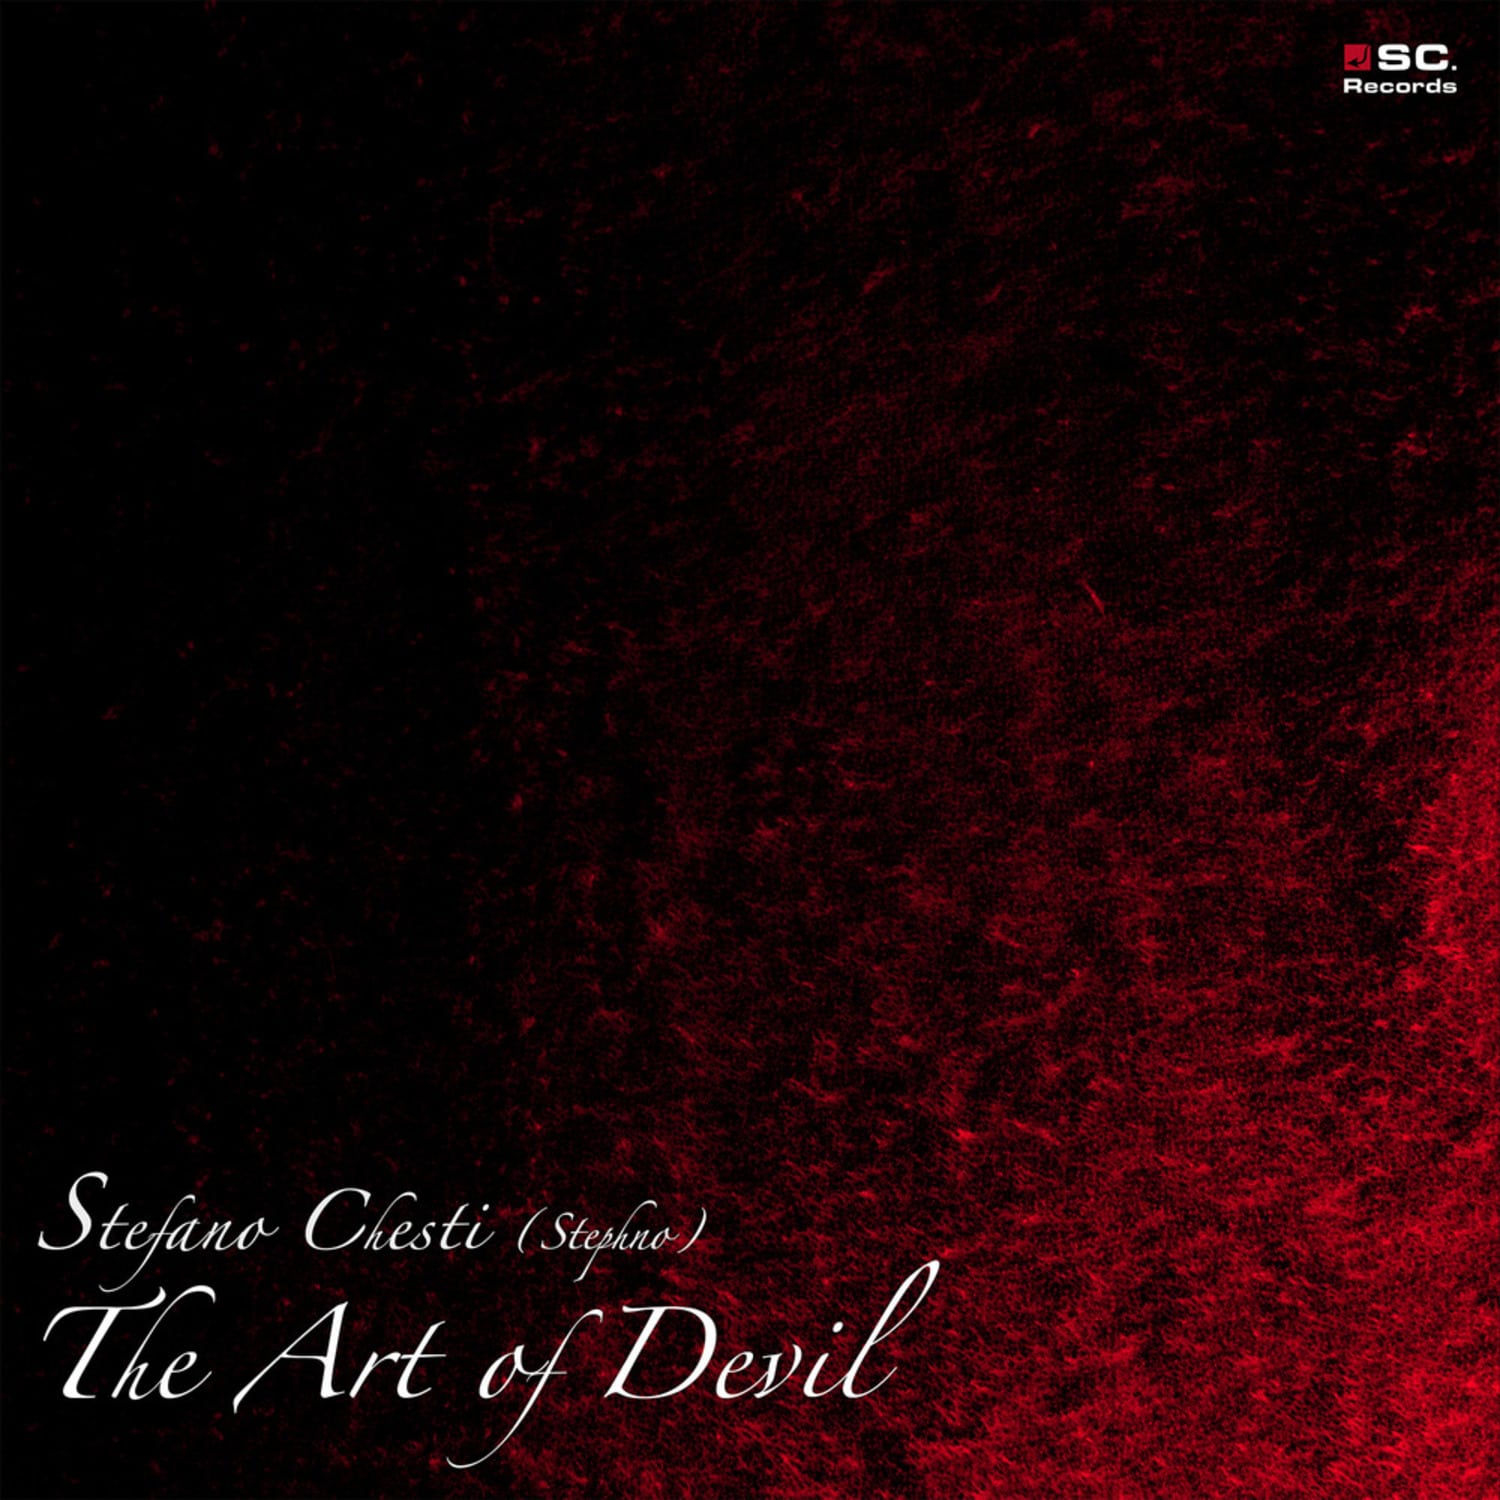 Stefano Chesti  - THE ART OF DEVIL 